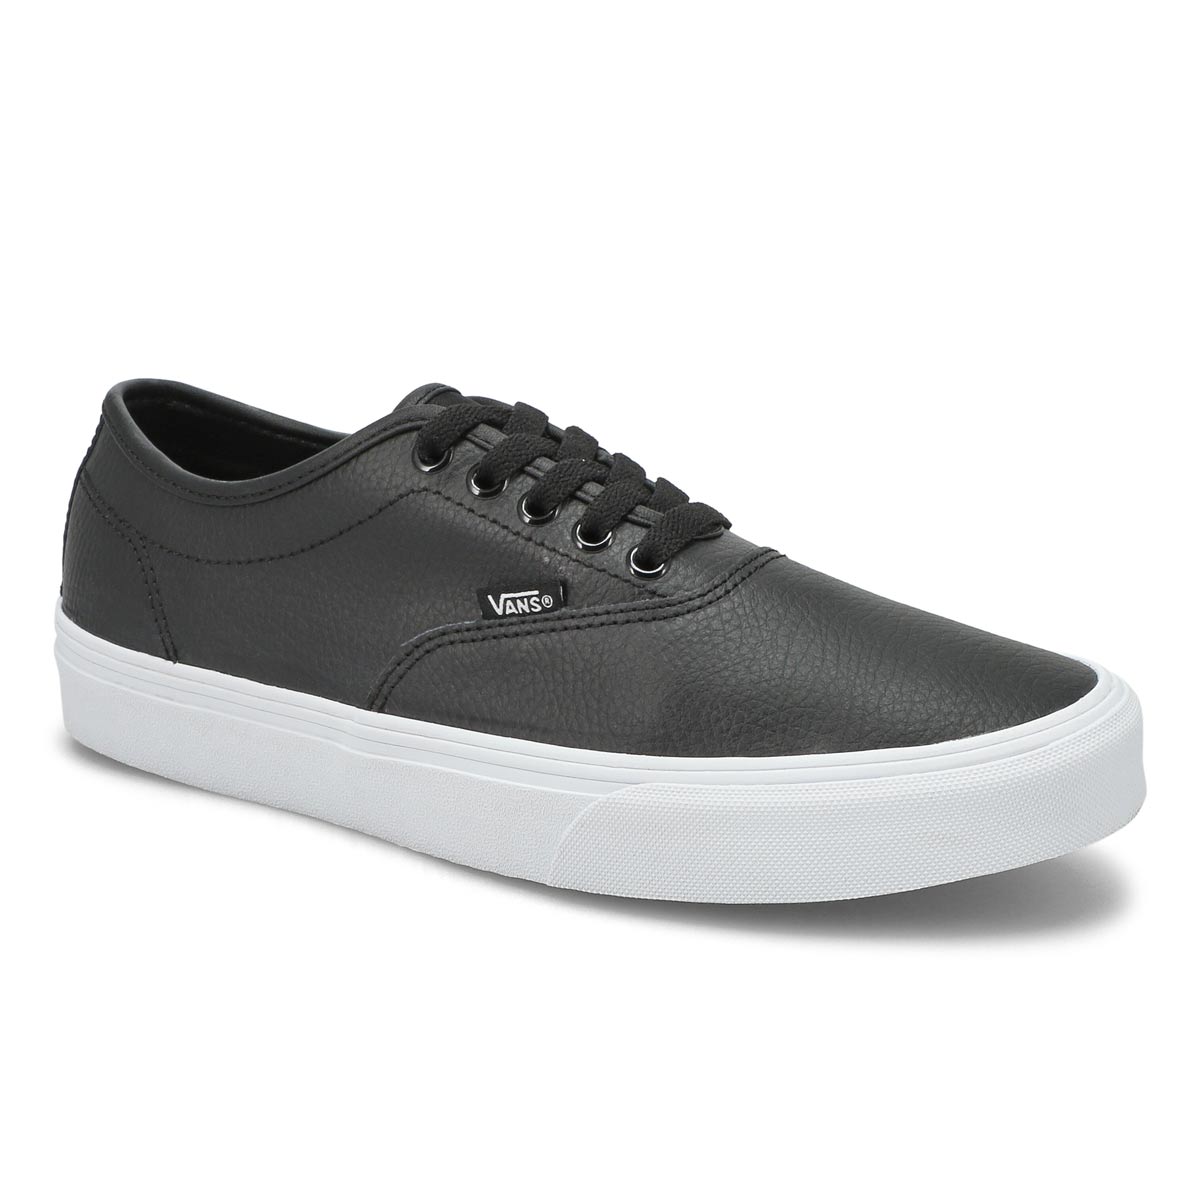 Men's Doheny Decon Sneaker - Black/White